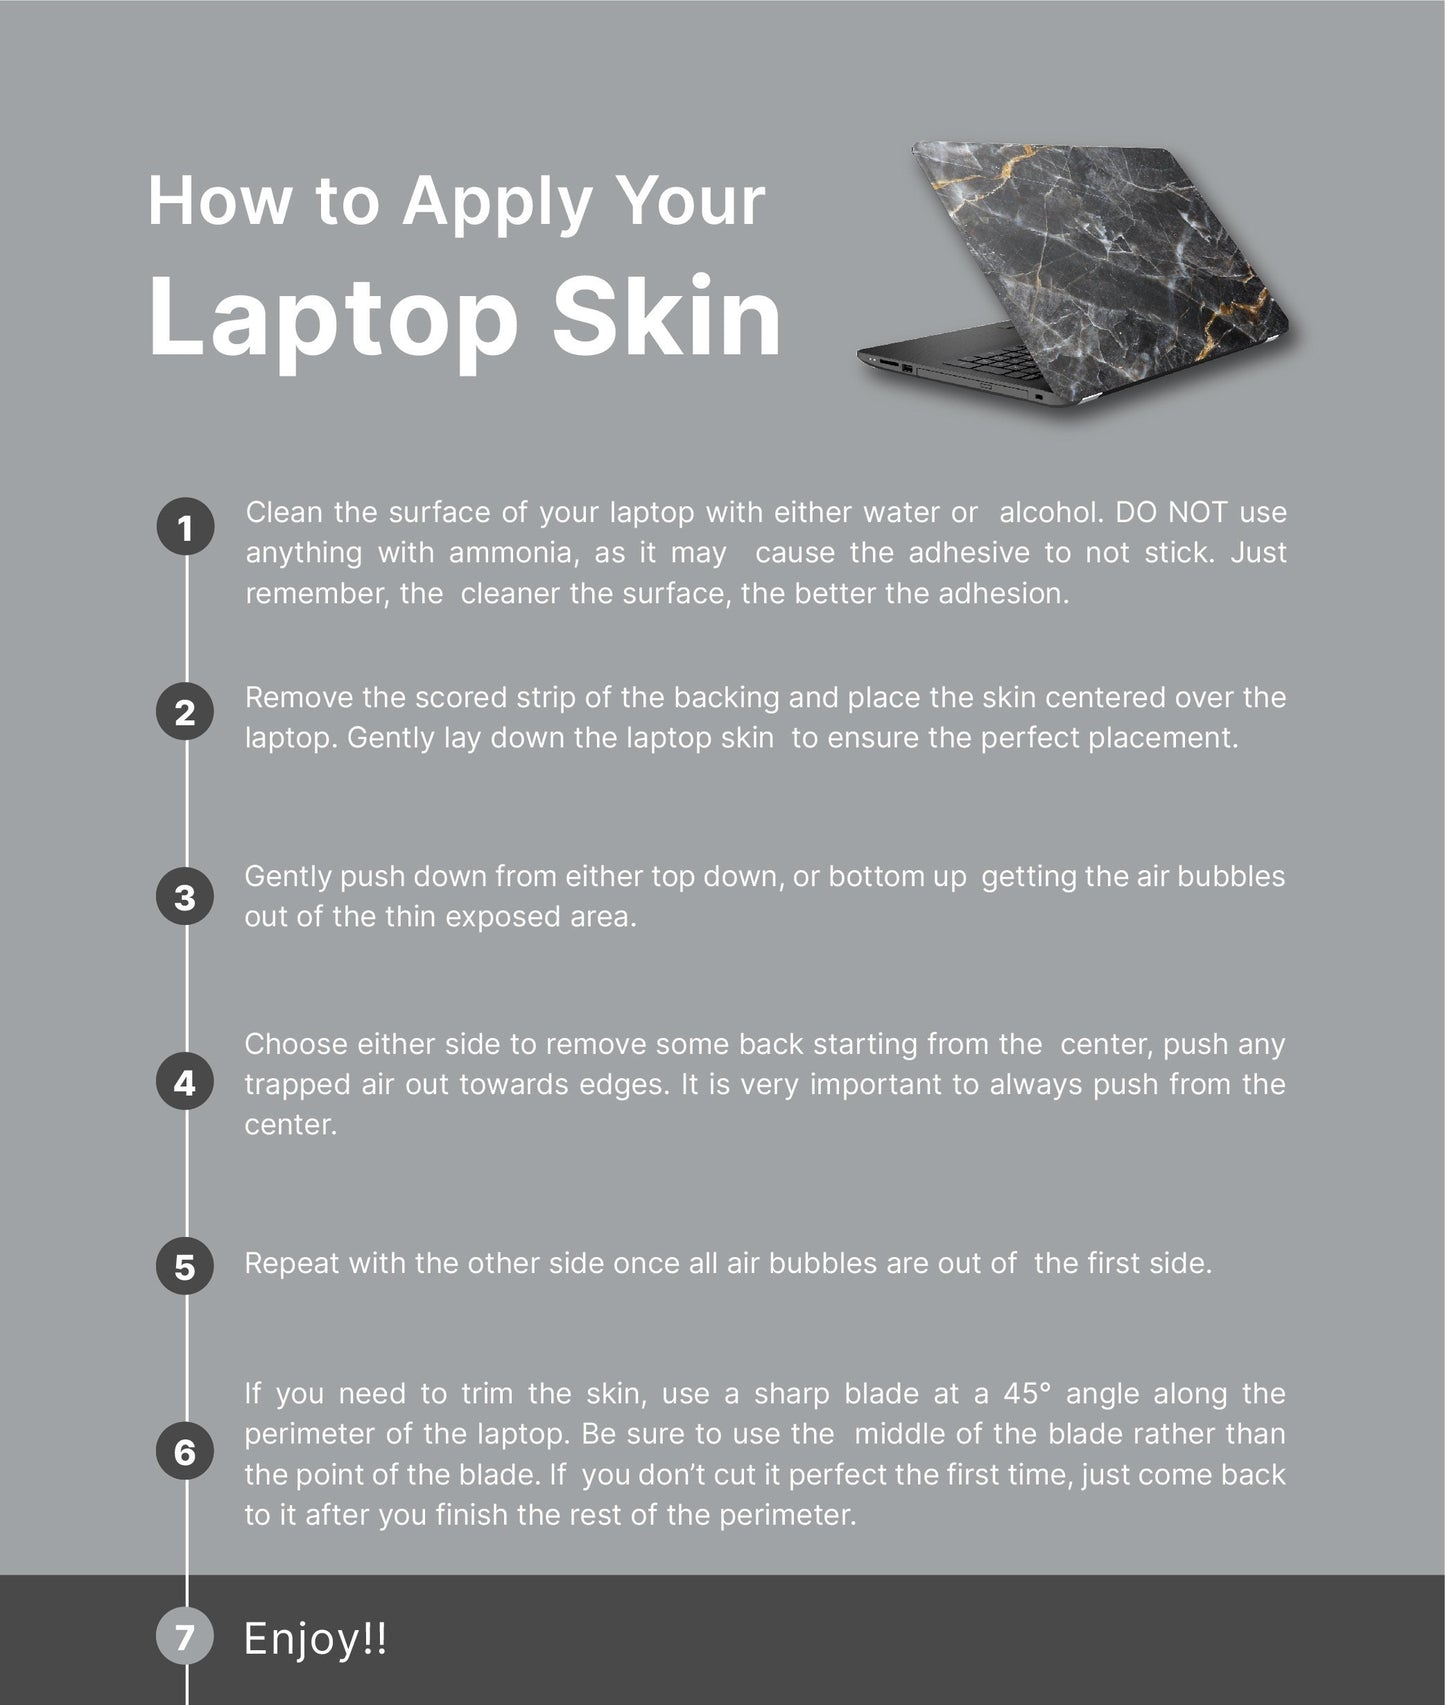 Dark Tropicals Laptop Skin, Laptop Cover, Laptop Skins, Removable Laptop Skins, Laptop Decal, Customized Laptop Skin, Laptop Stickers 239